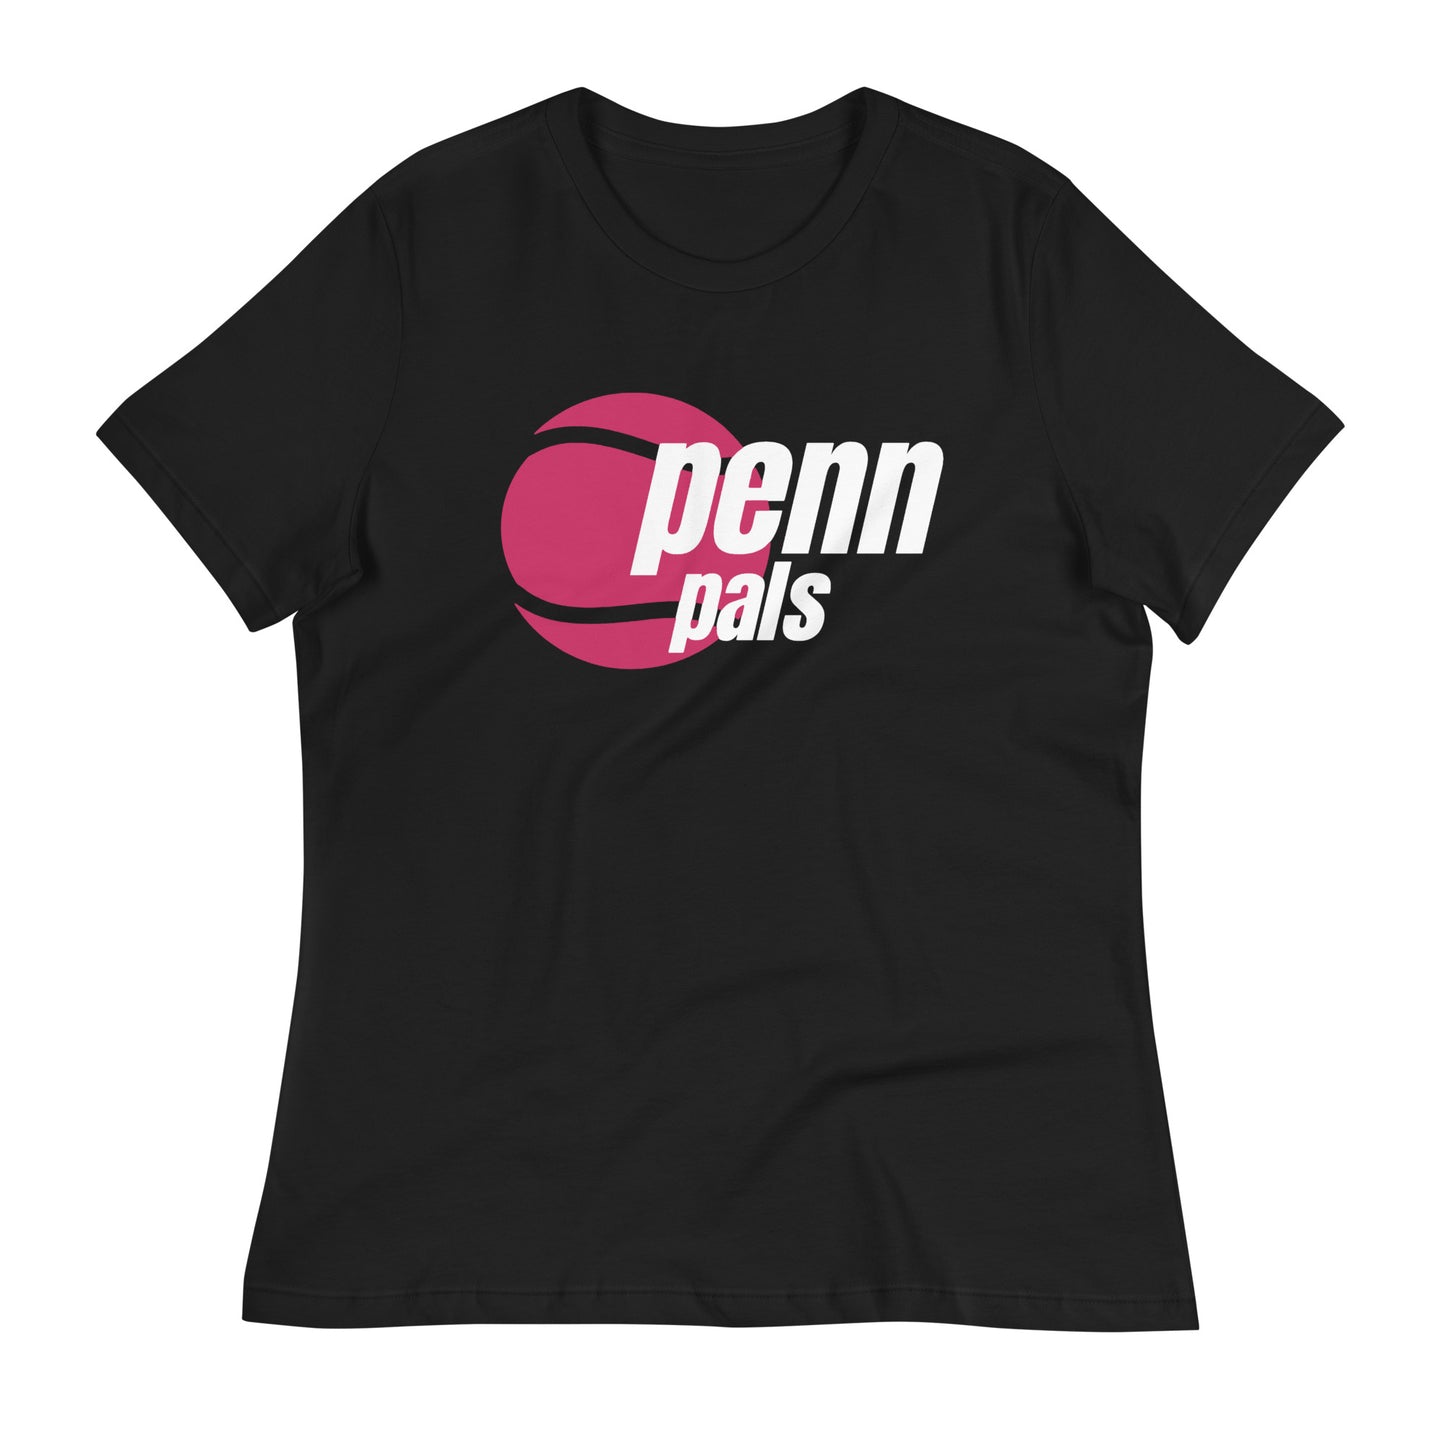 Penn Pals tennis team ladies' relaxed shirt